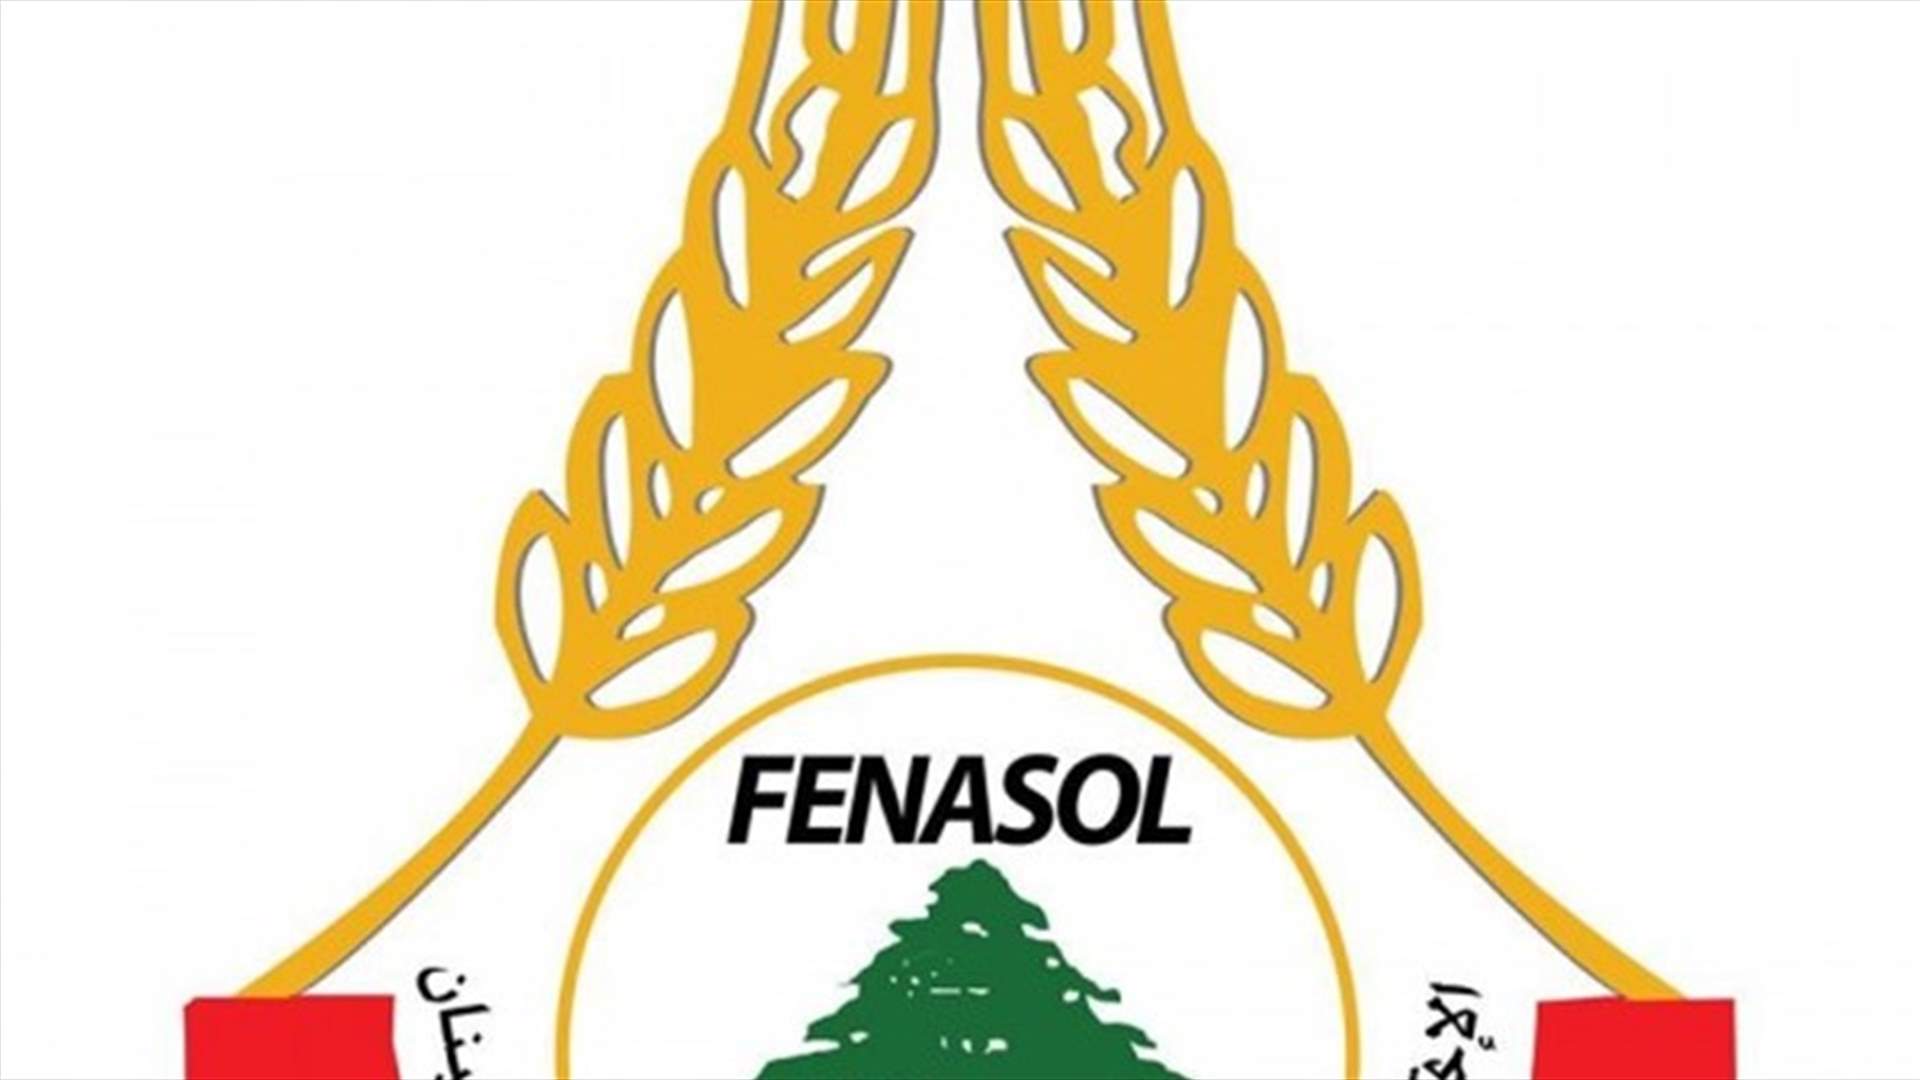 FENASOL : لرفع بدل النقل اليومي للعاملين في القطاعين الخاص والعام الى 20 الف ليرة